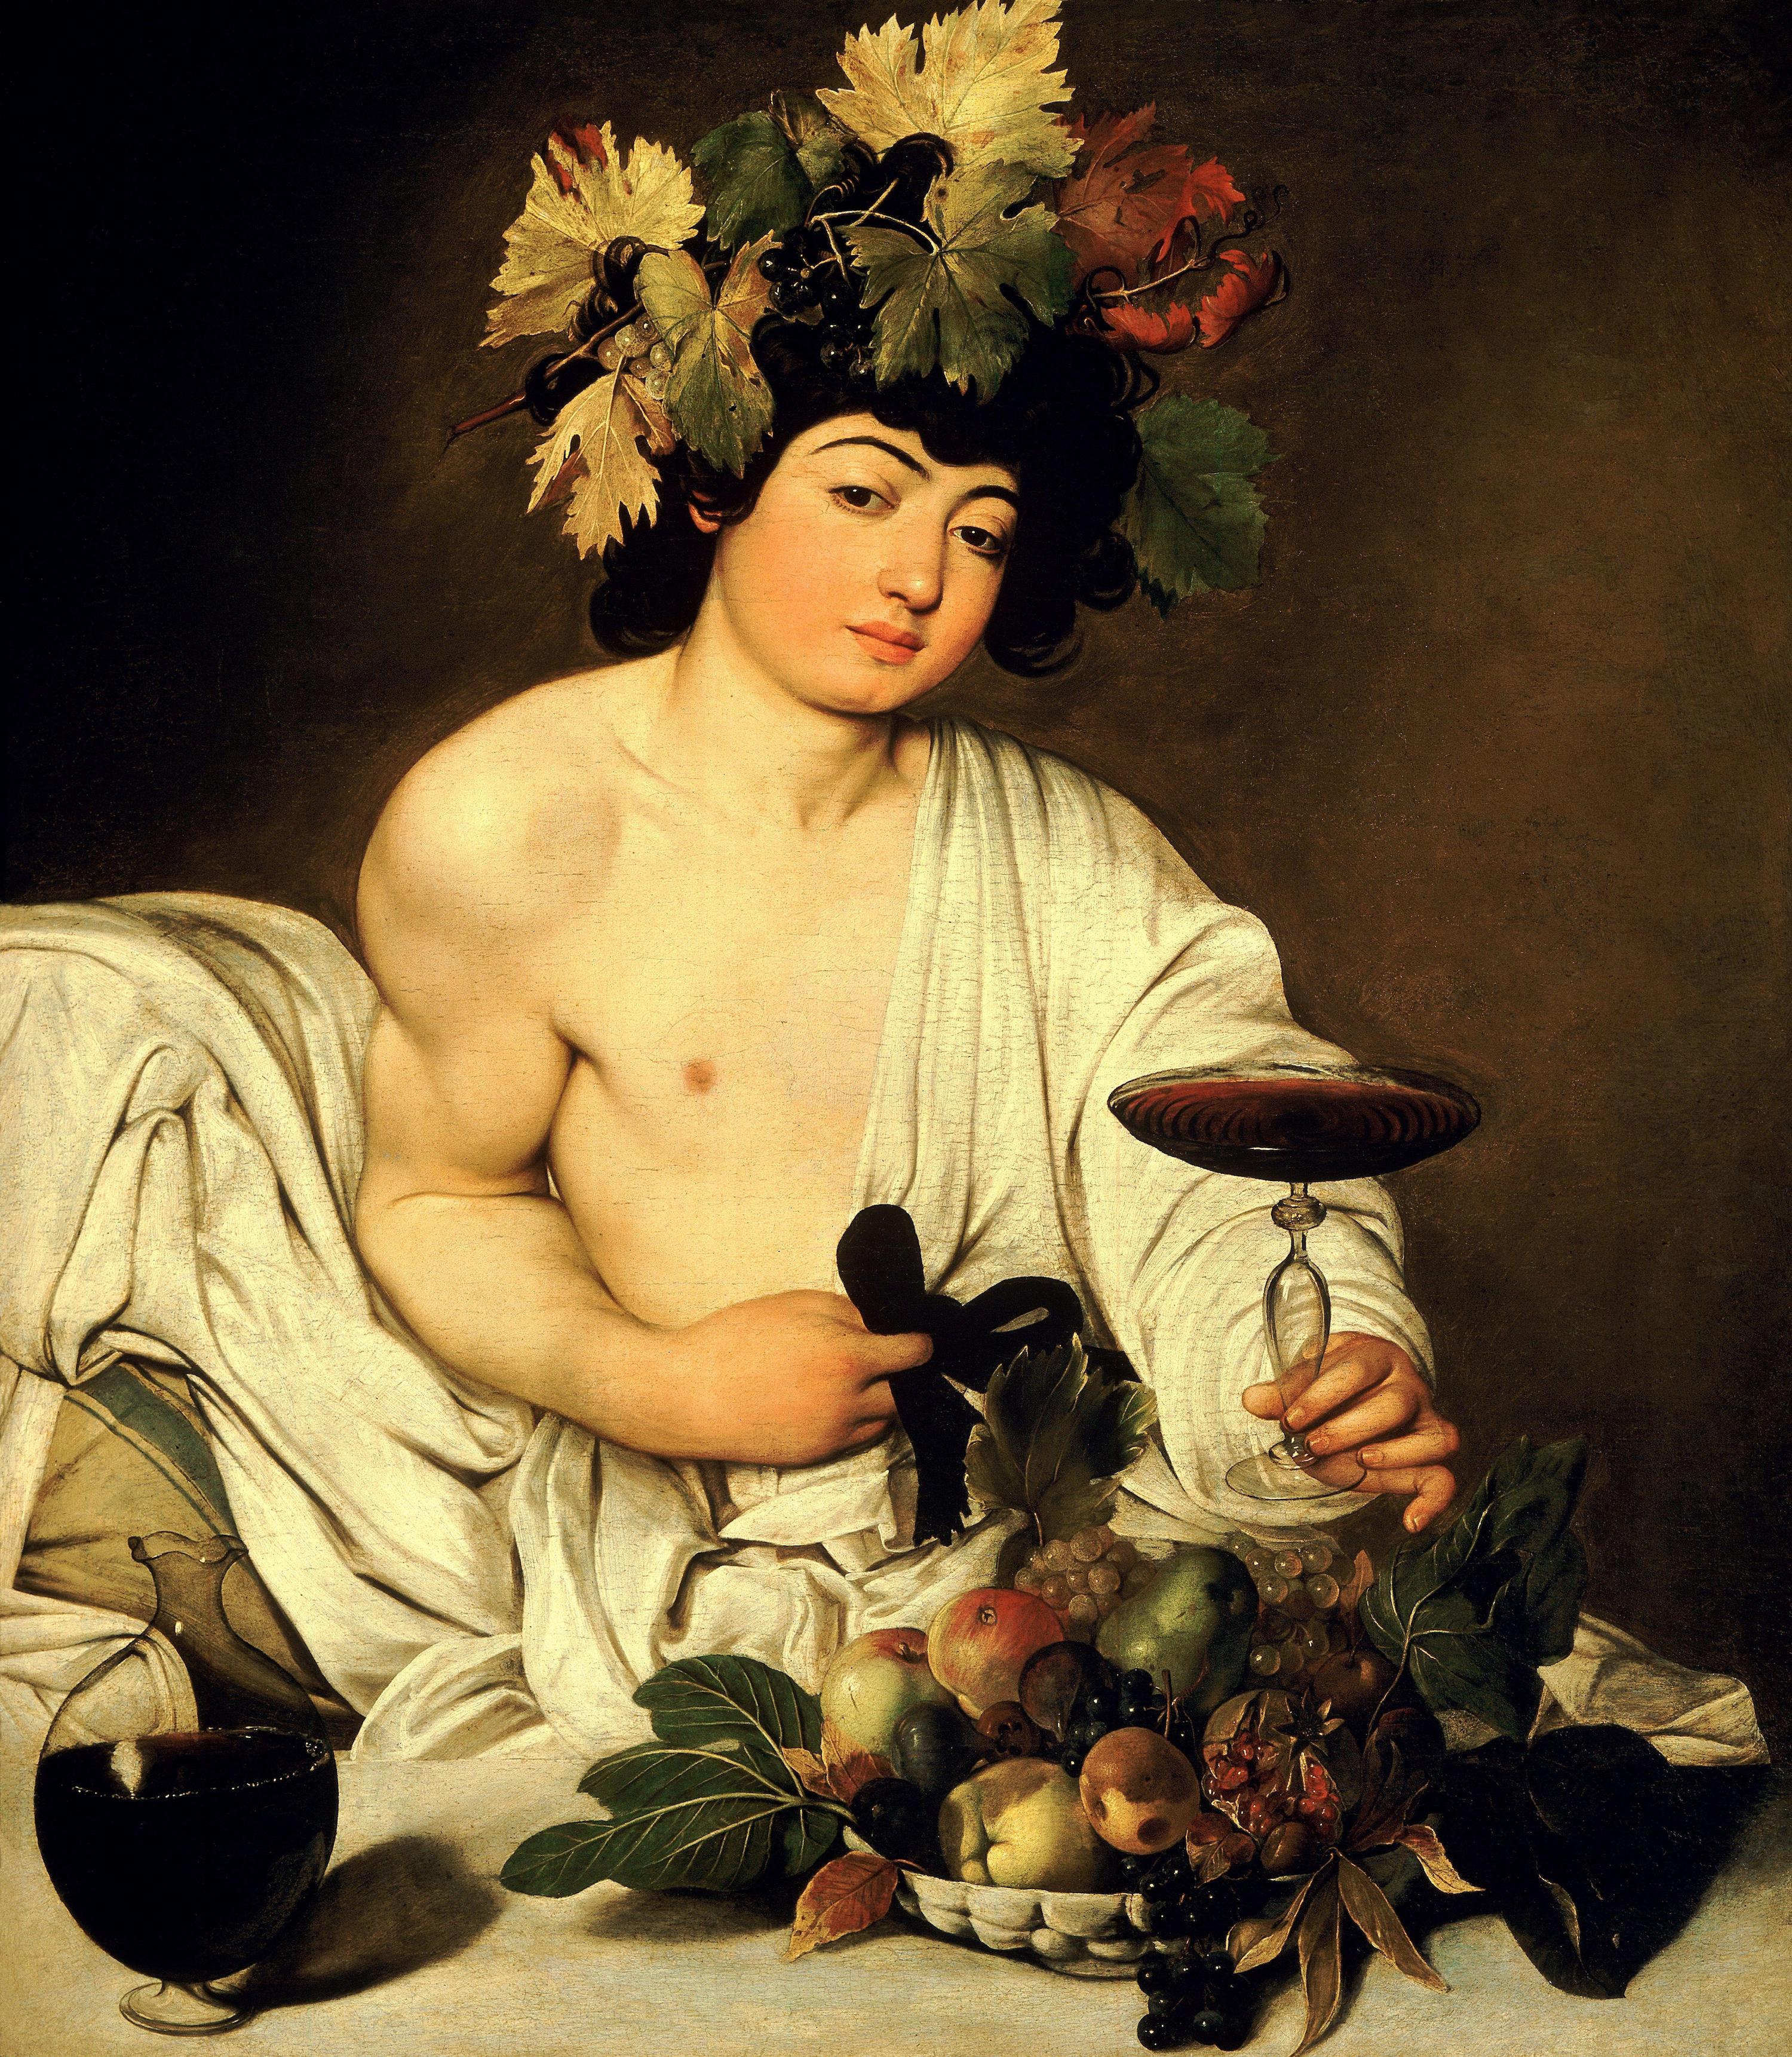 酒神巴克斯 by 米開朗基羅·梅里西·達· 卡拉瓦喬 - c. 1596 - 95 × 85 cm 